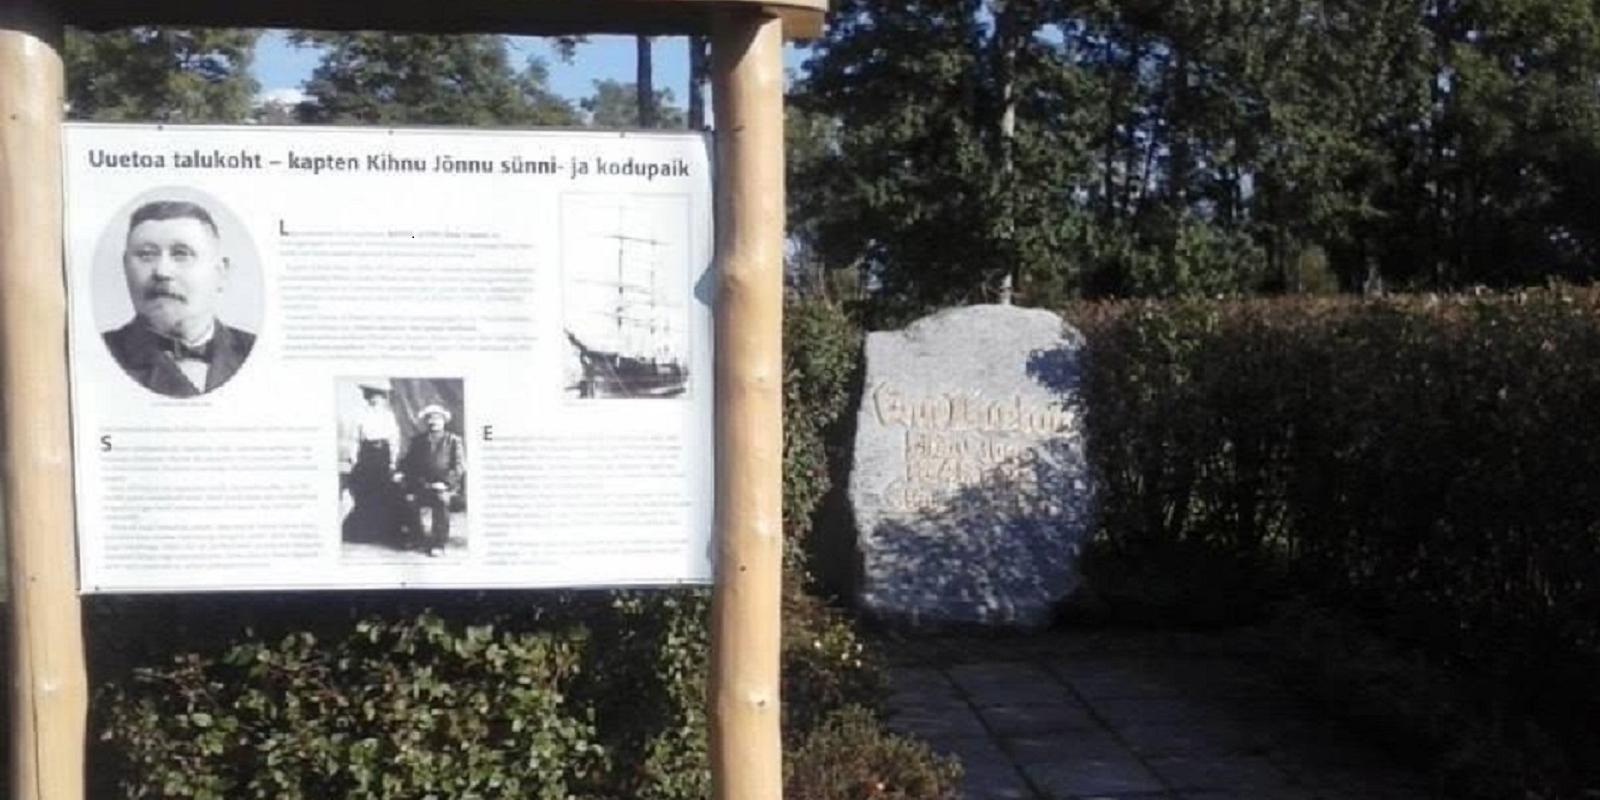 Gedenkstein für Kihnu Jõnn (Enn Uuetoa)